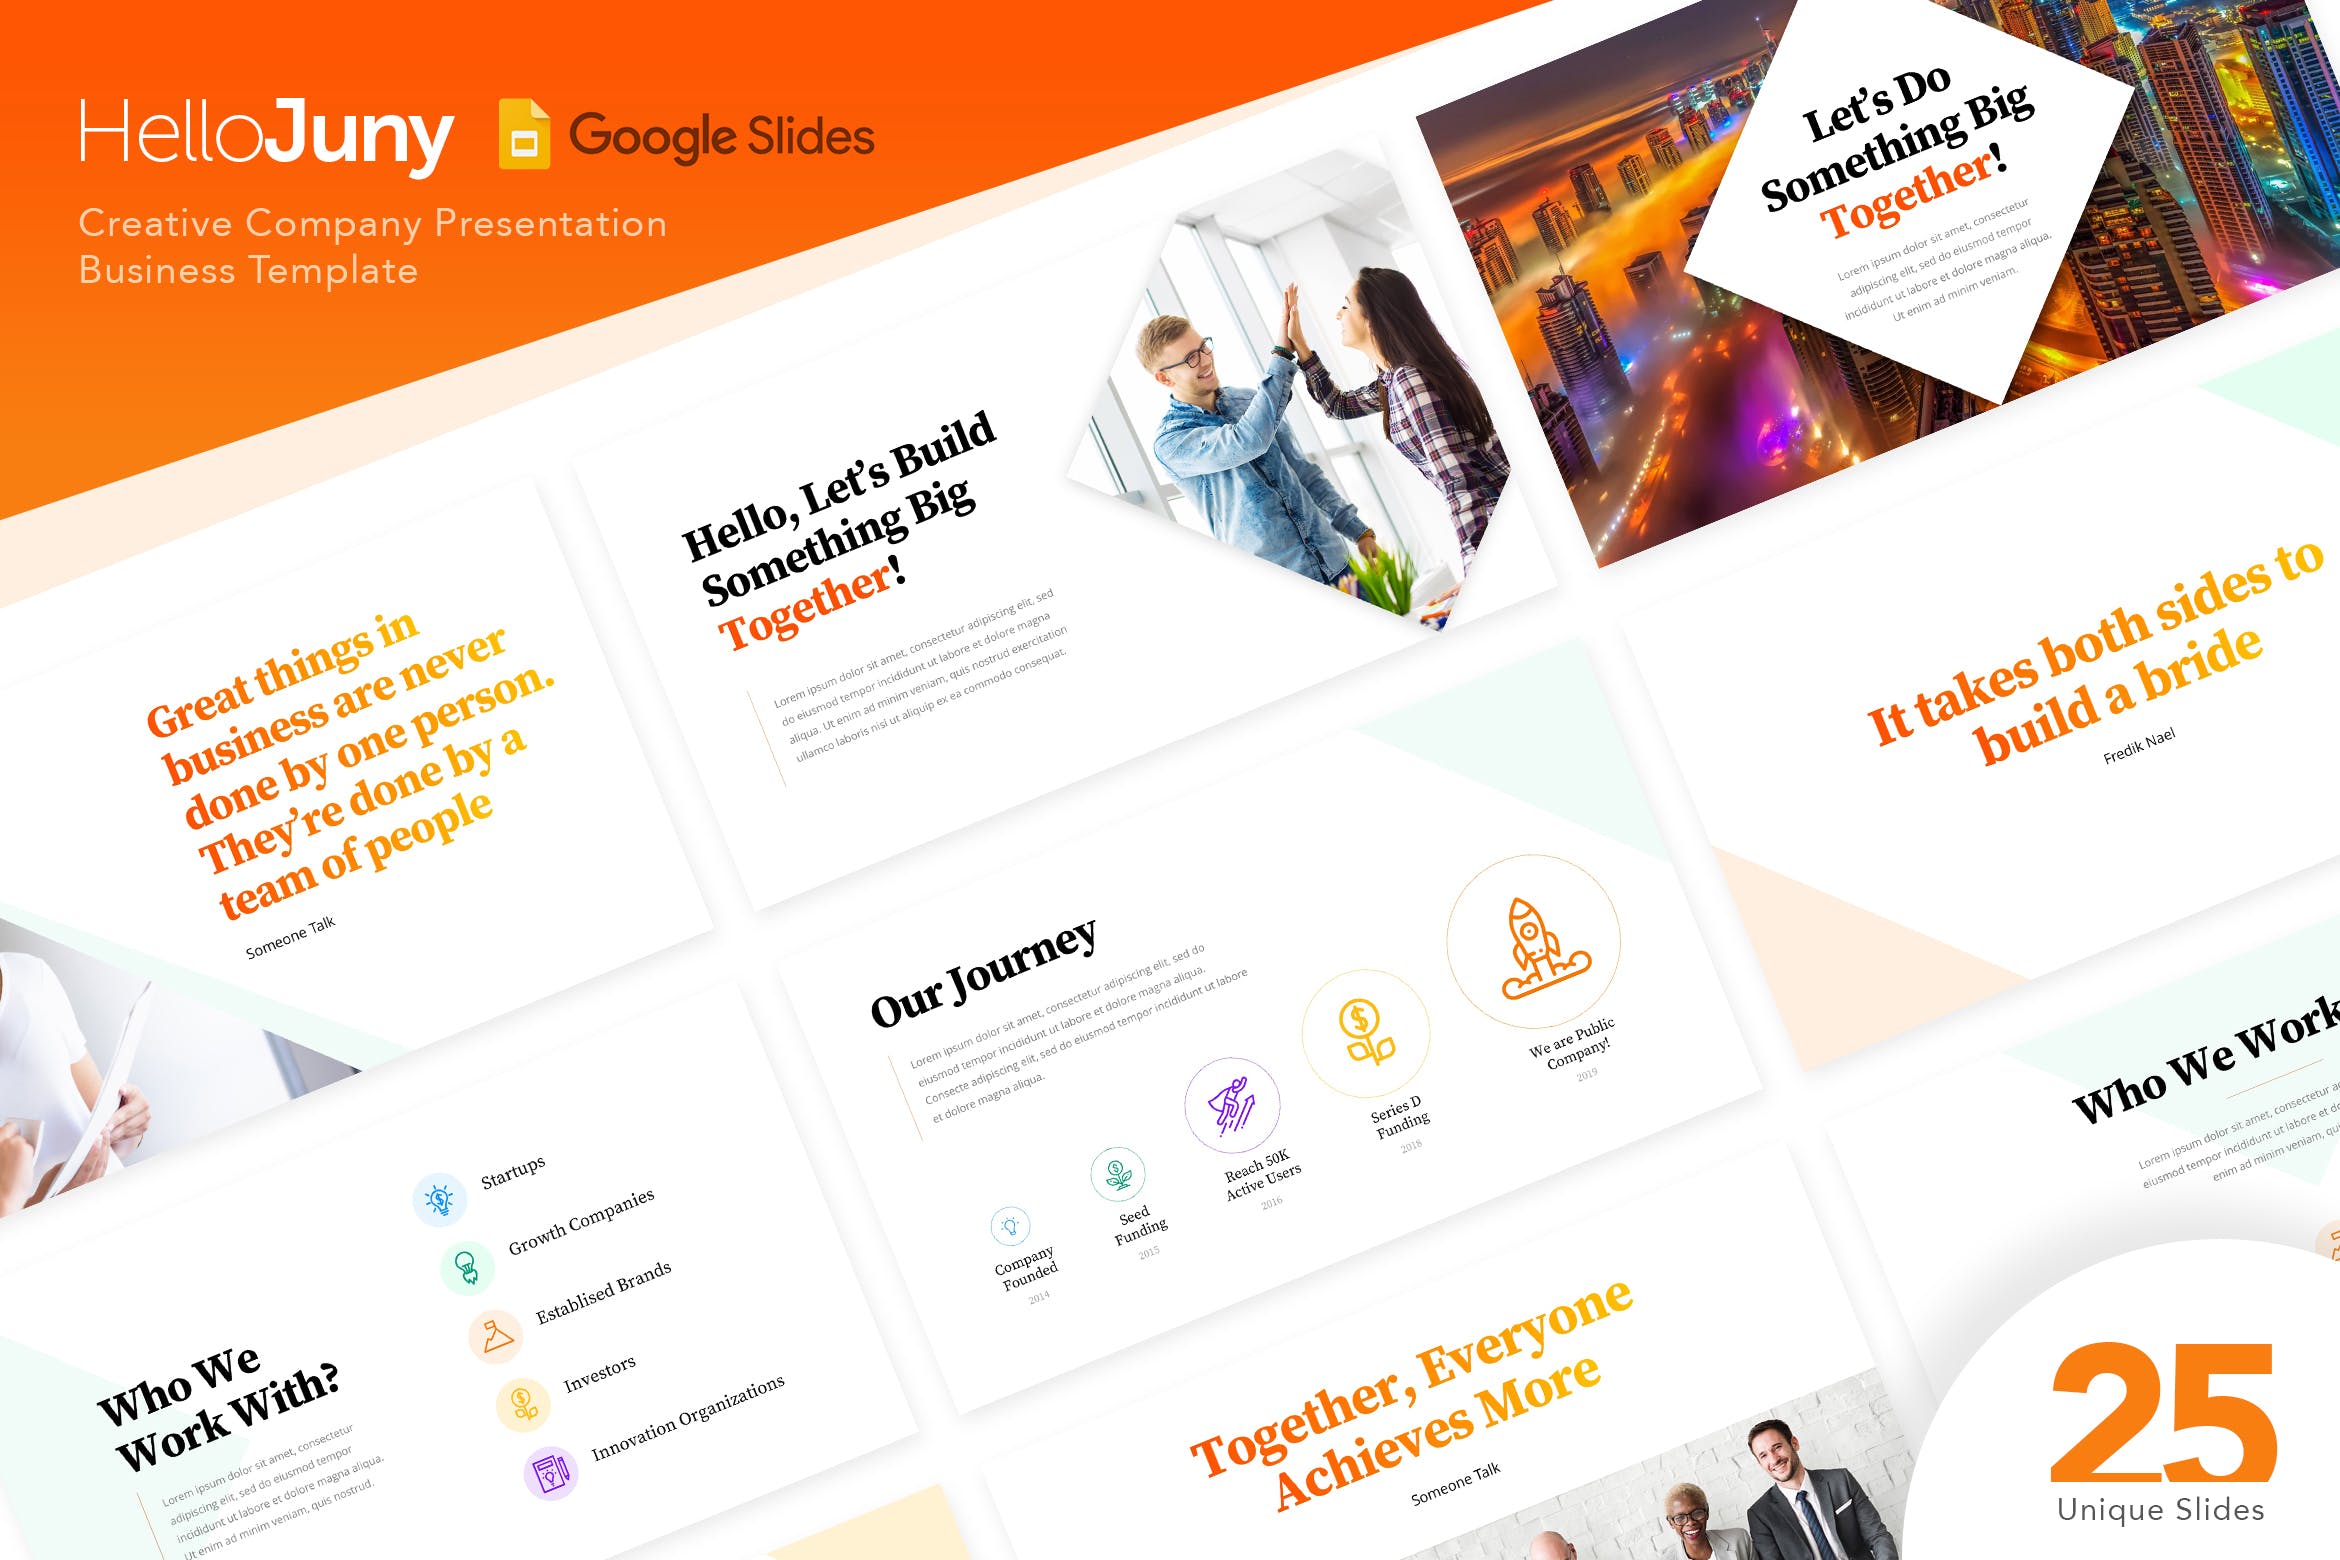 互联网企业路演PPT幻灯片模板HelloJuny Creative Company Business Google Slide